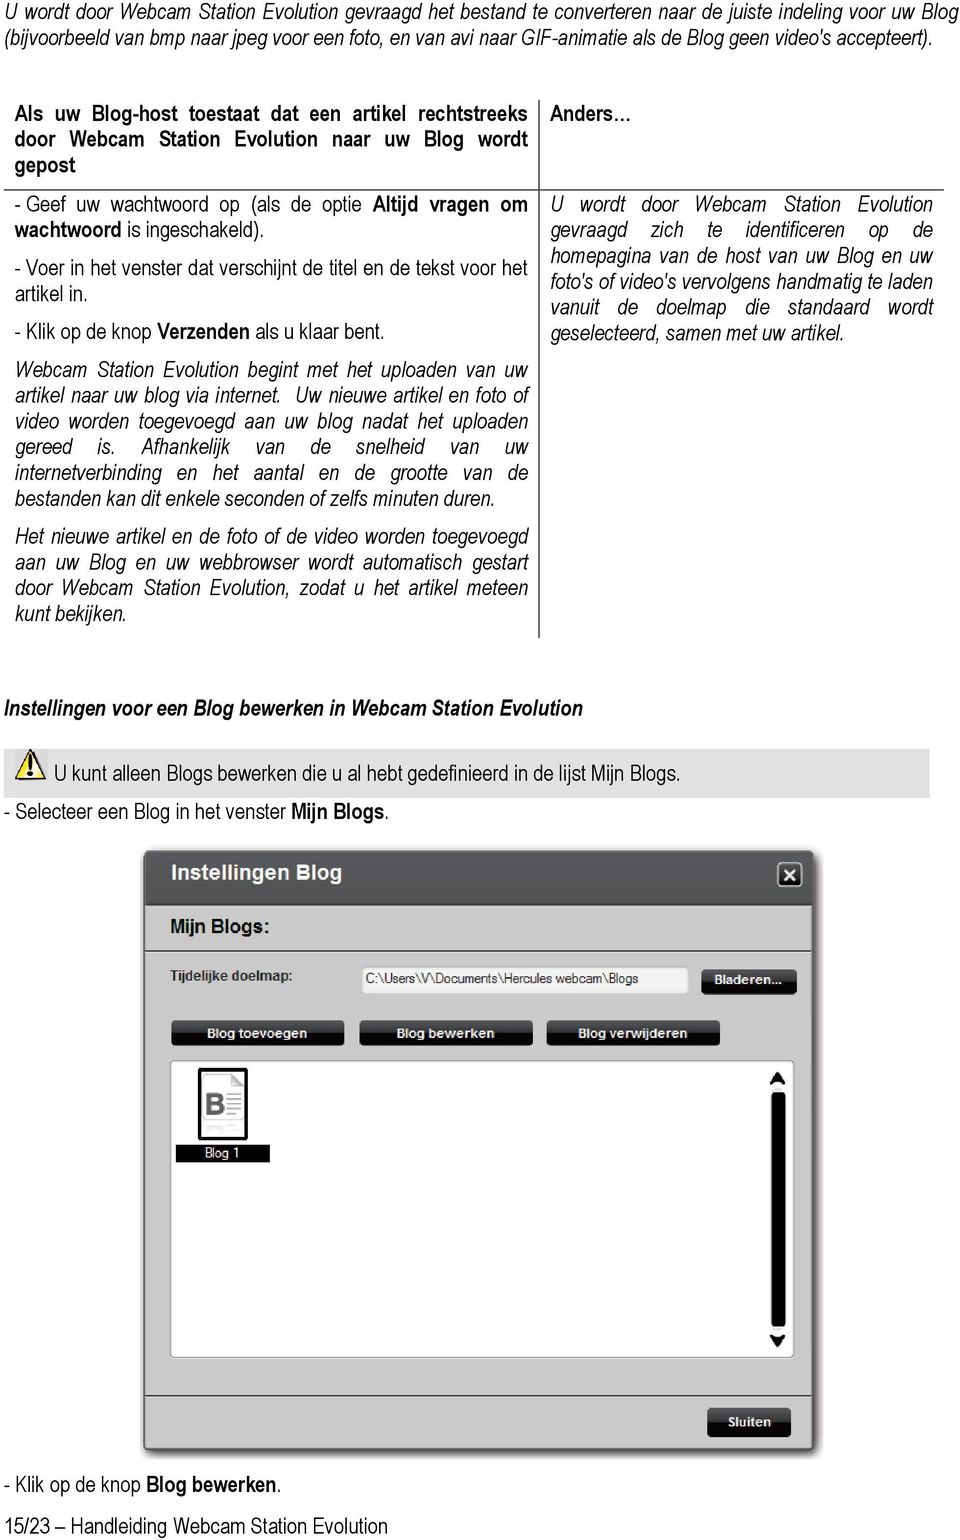 Als uw Blog-host toestaat dat een artikel rechtstreeks door Webcam Station Evolution naar uw Blog wordt gepost - Geef uw wachtwoord op (als de optie Altijd vragen om wachtwoord is ingeschakeld).